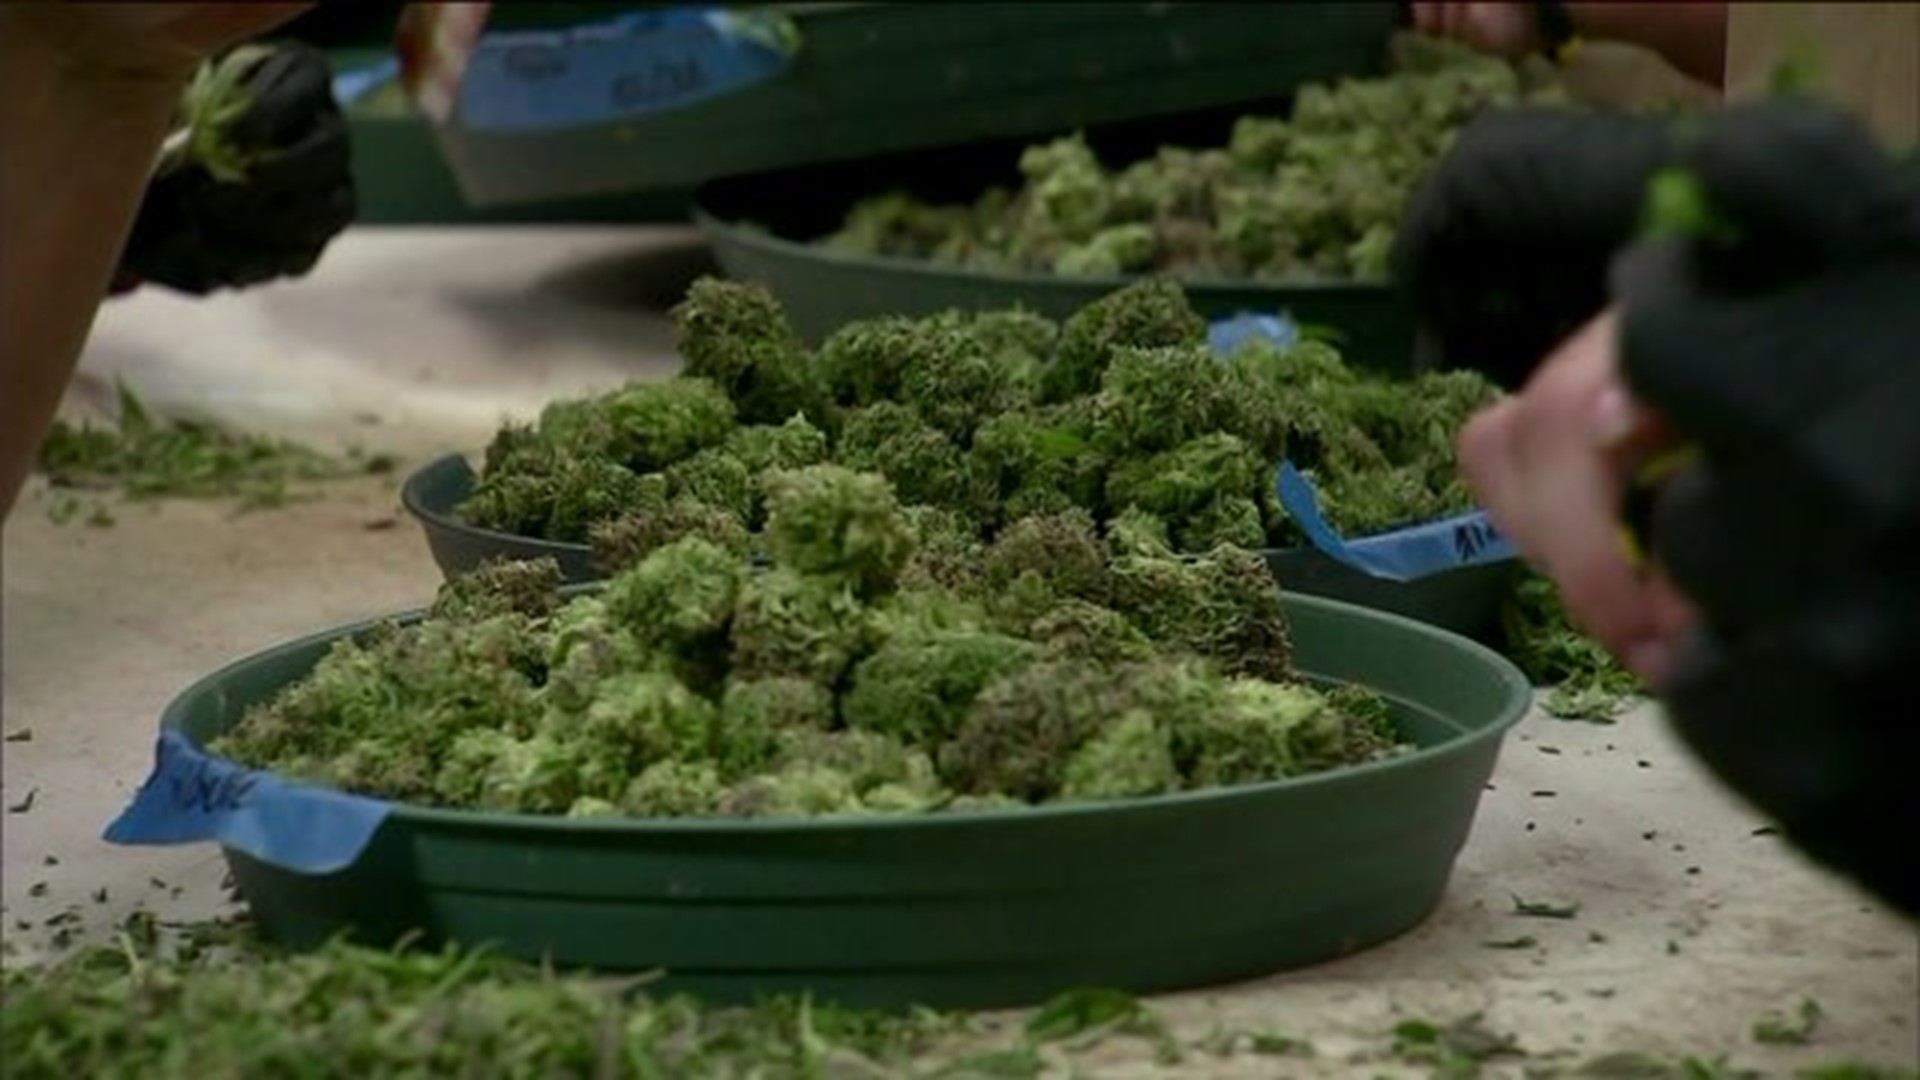 Legalizing recreational marijuana in CT